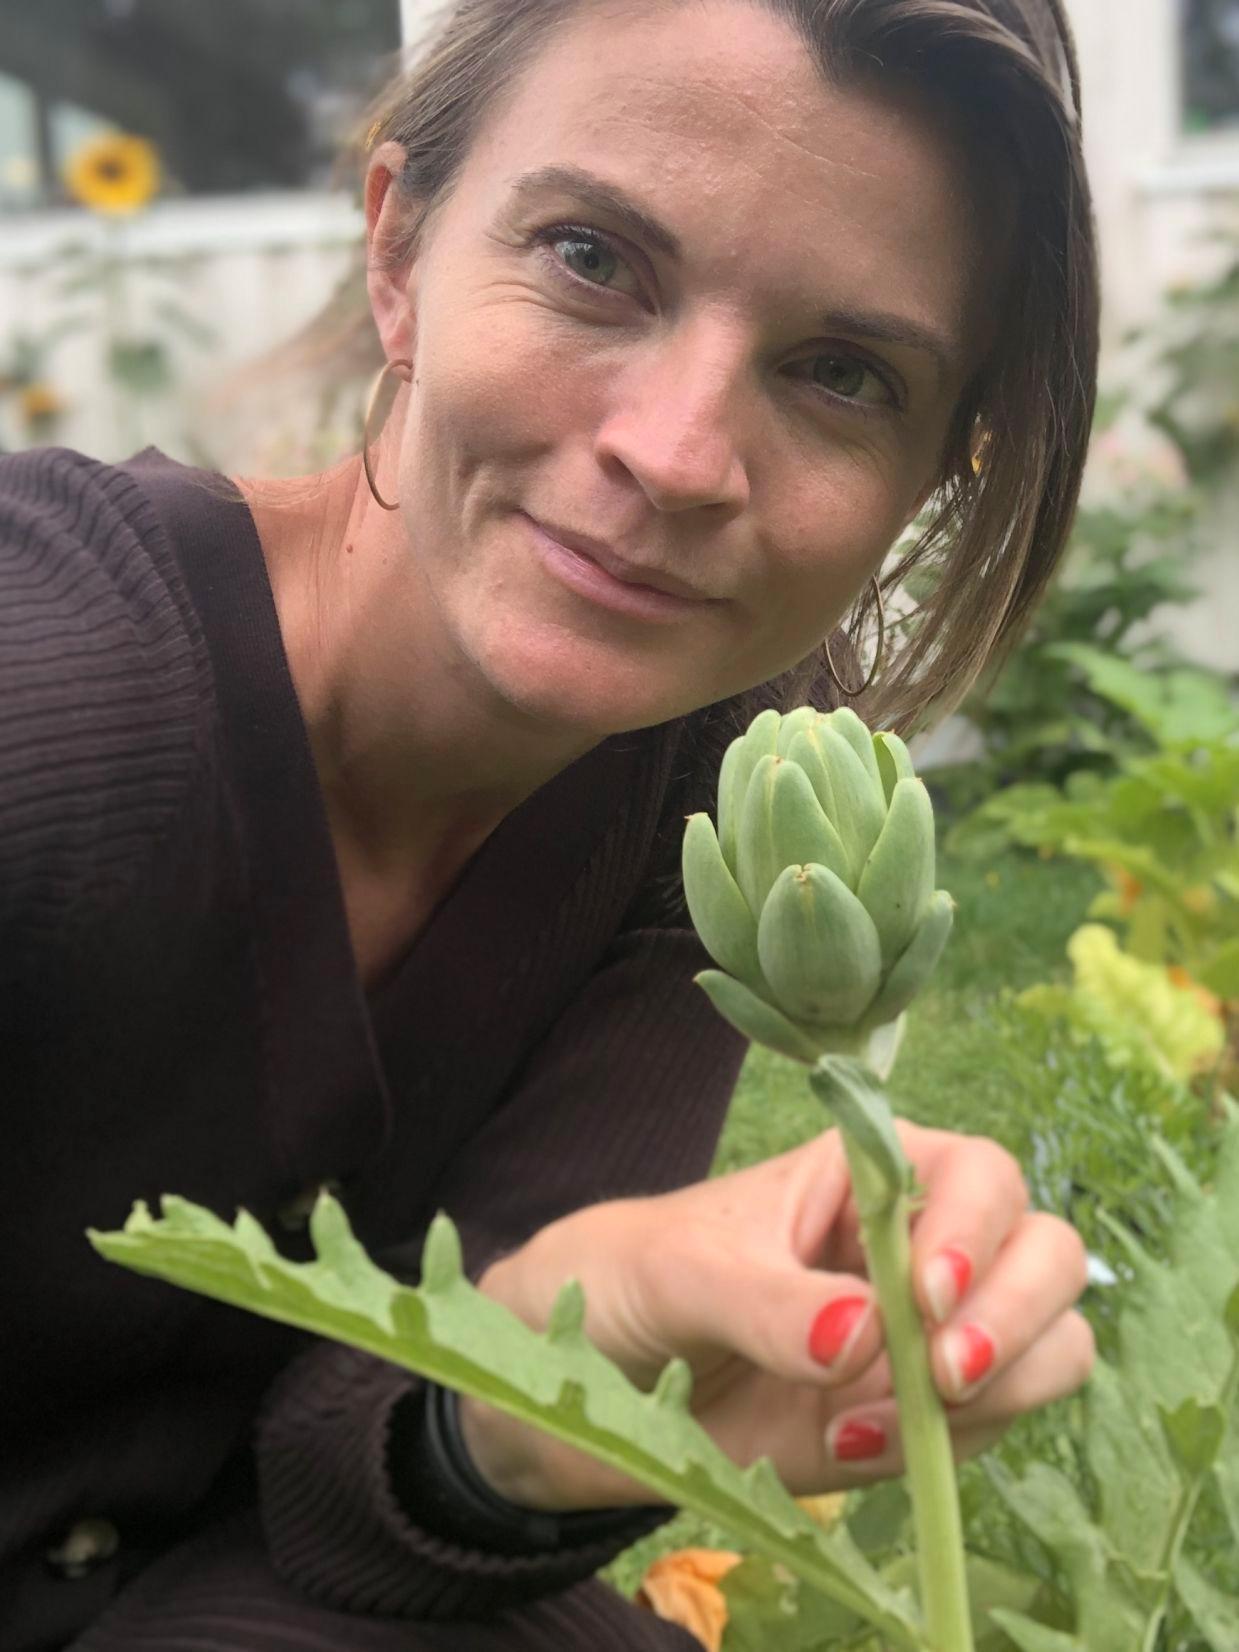 LIDENSKAP: Madeleine Strand elsker å dyrke noe hun kan spise. Foto: Privat